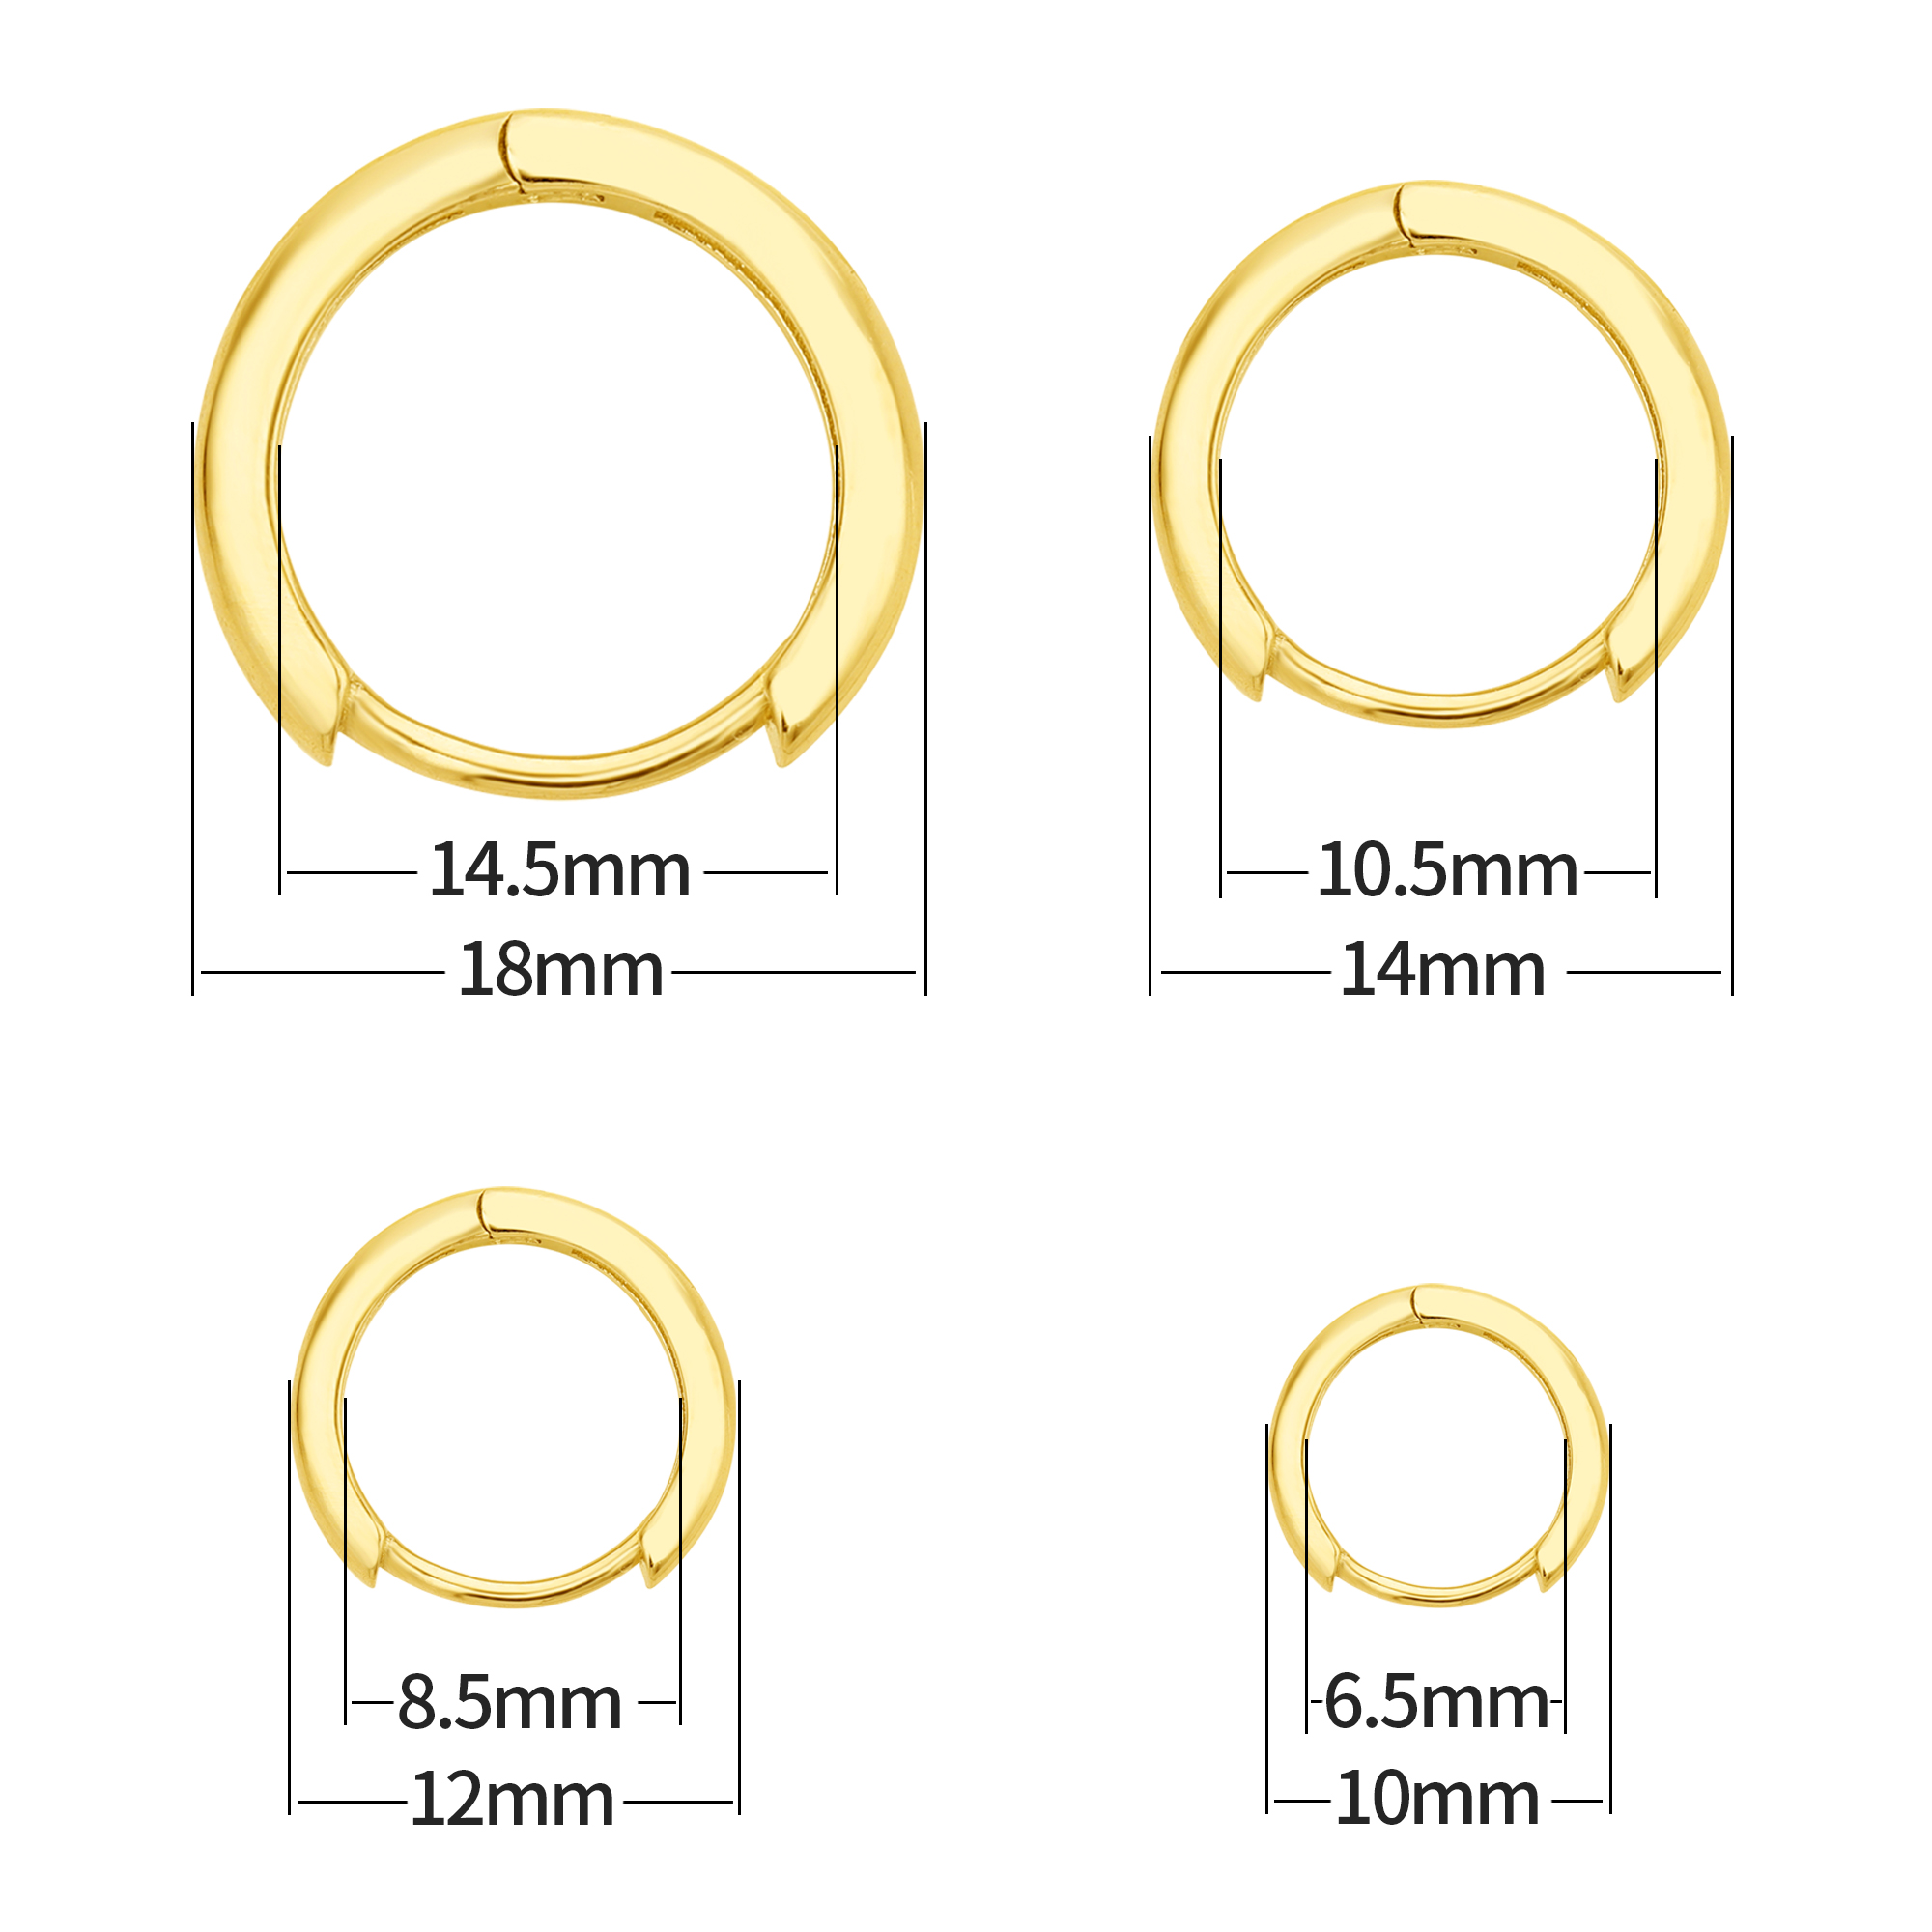 Minimalist Round Circle Hoop Earrings,Solid 925 Sterling Silver Ear Hooks,Simple Earring,Tiny Hoop Earrings,DIY Earrings Supplies 1706122 - Click Image to Close